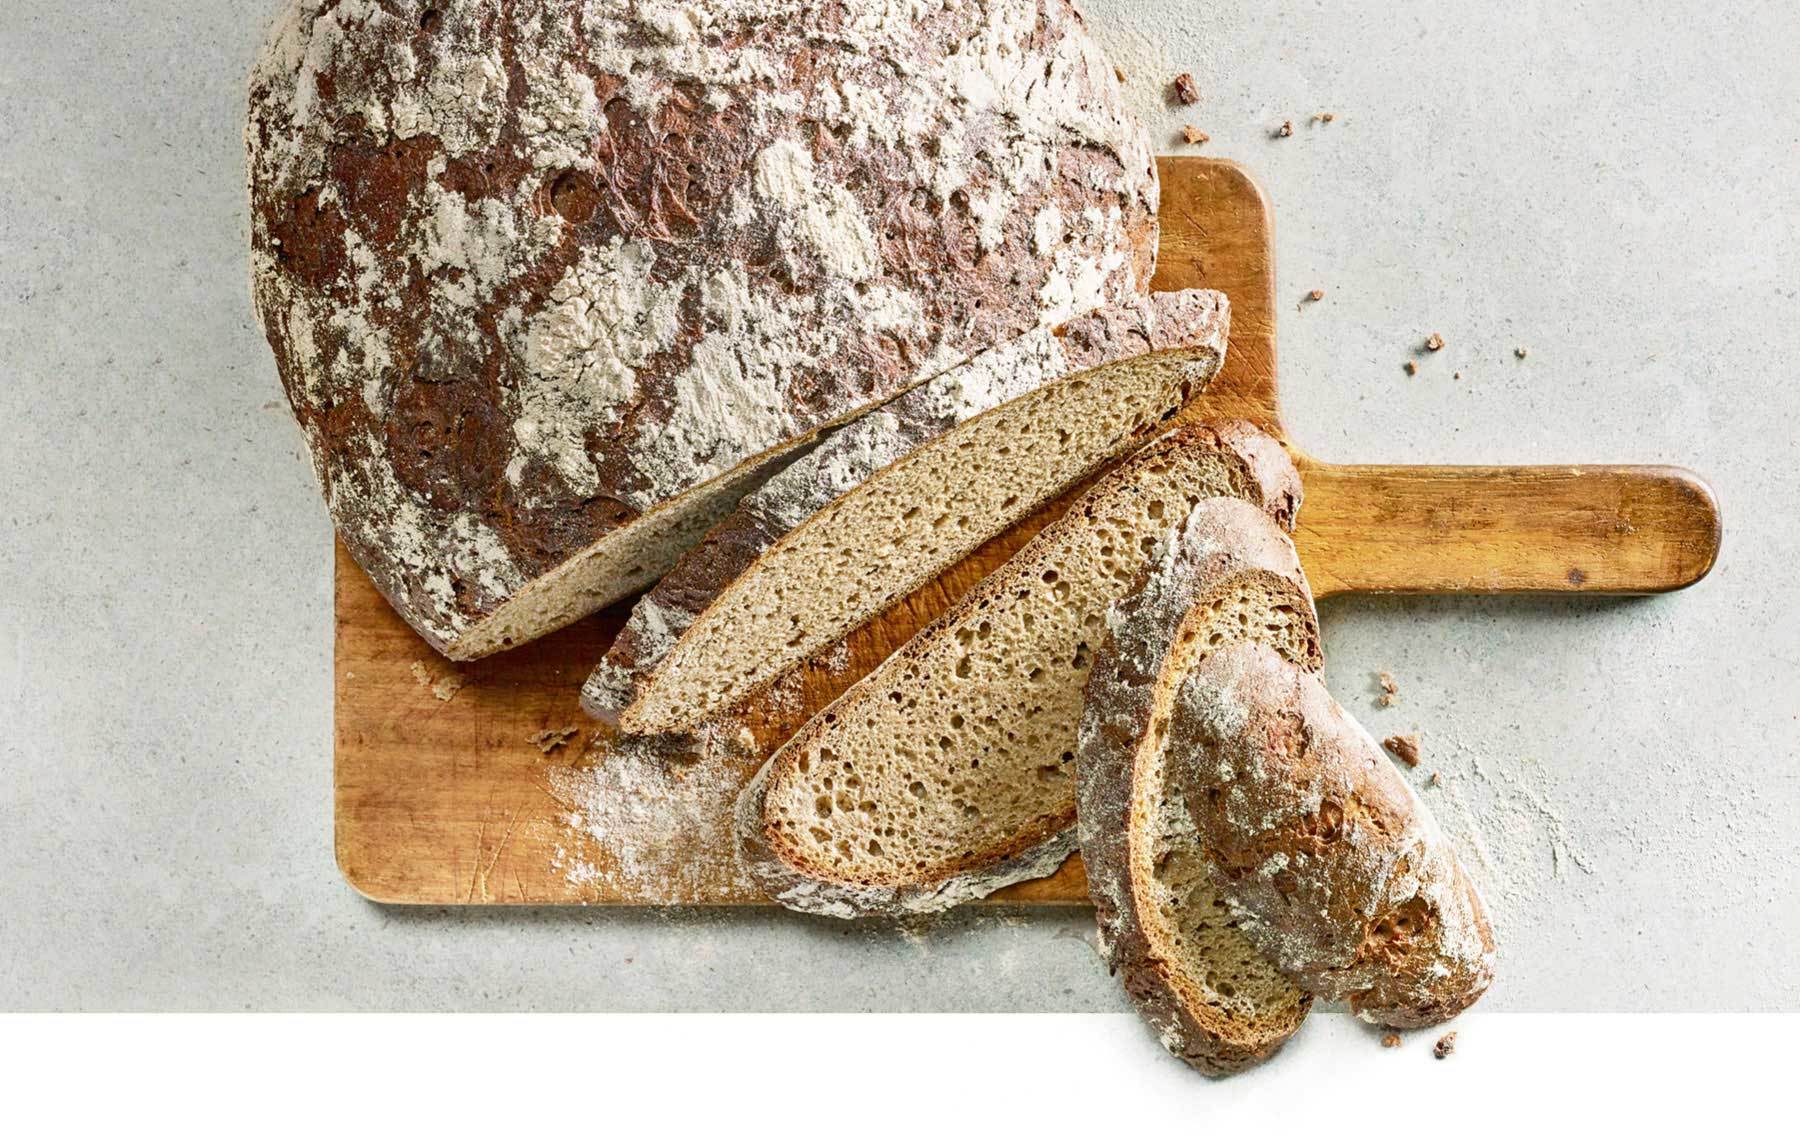 Die Bäcker Happ Roggenkruste ist ein 1.250 g schweres Roggenbrot mit einer Mehlverteilung von 90 % Roggen zu 10 % Weizen.